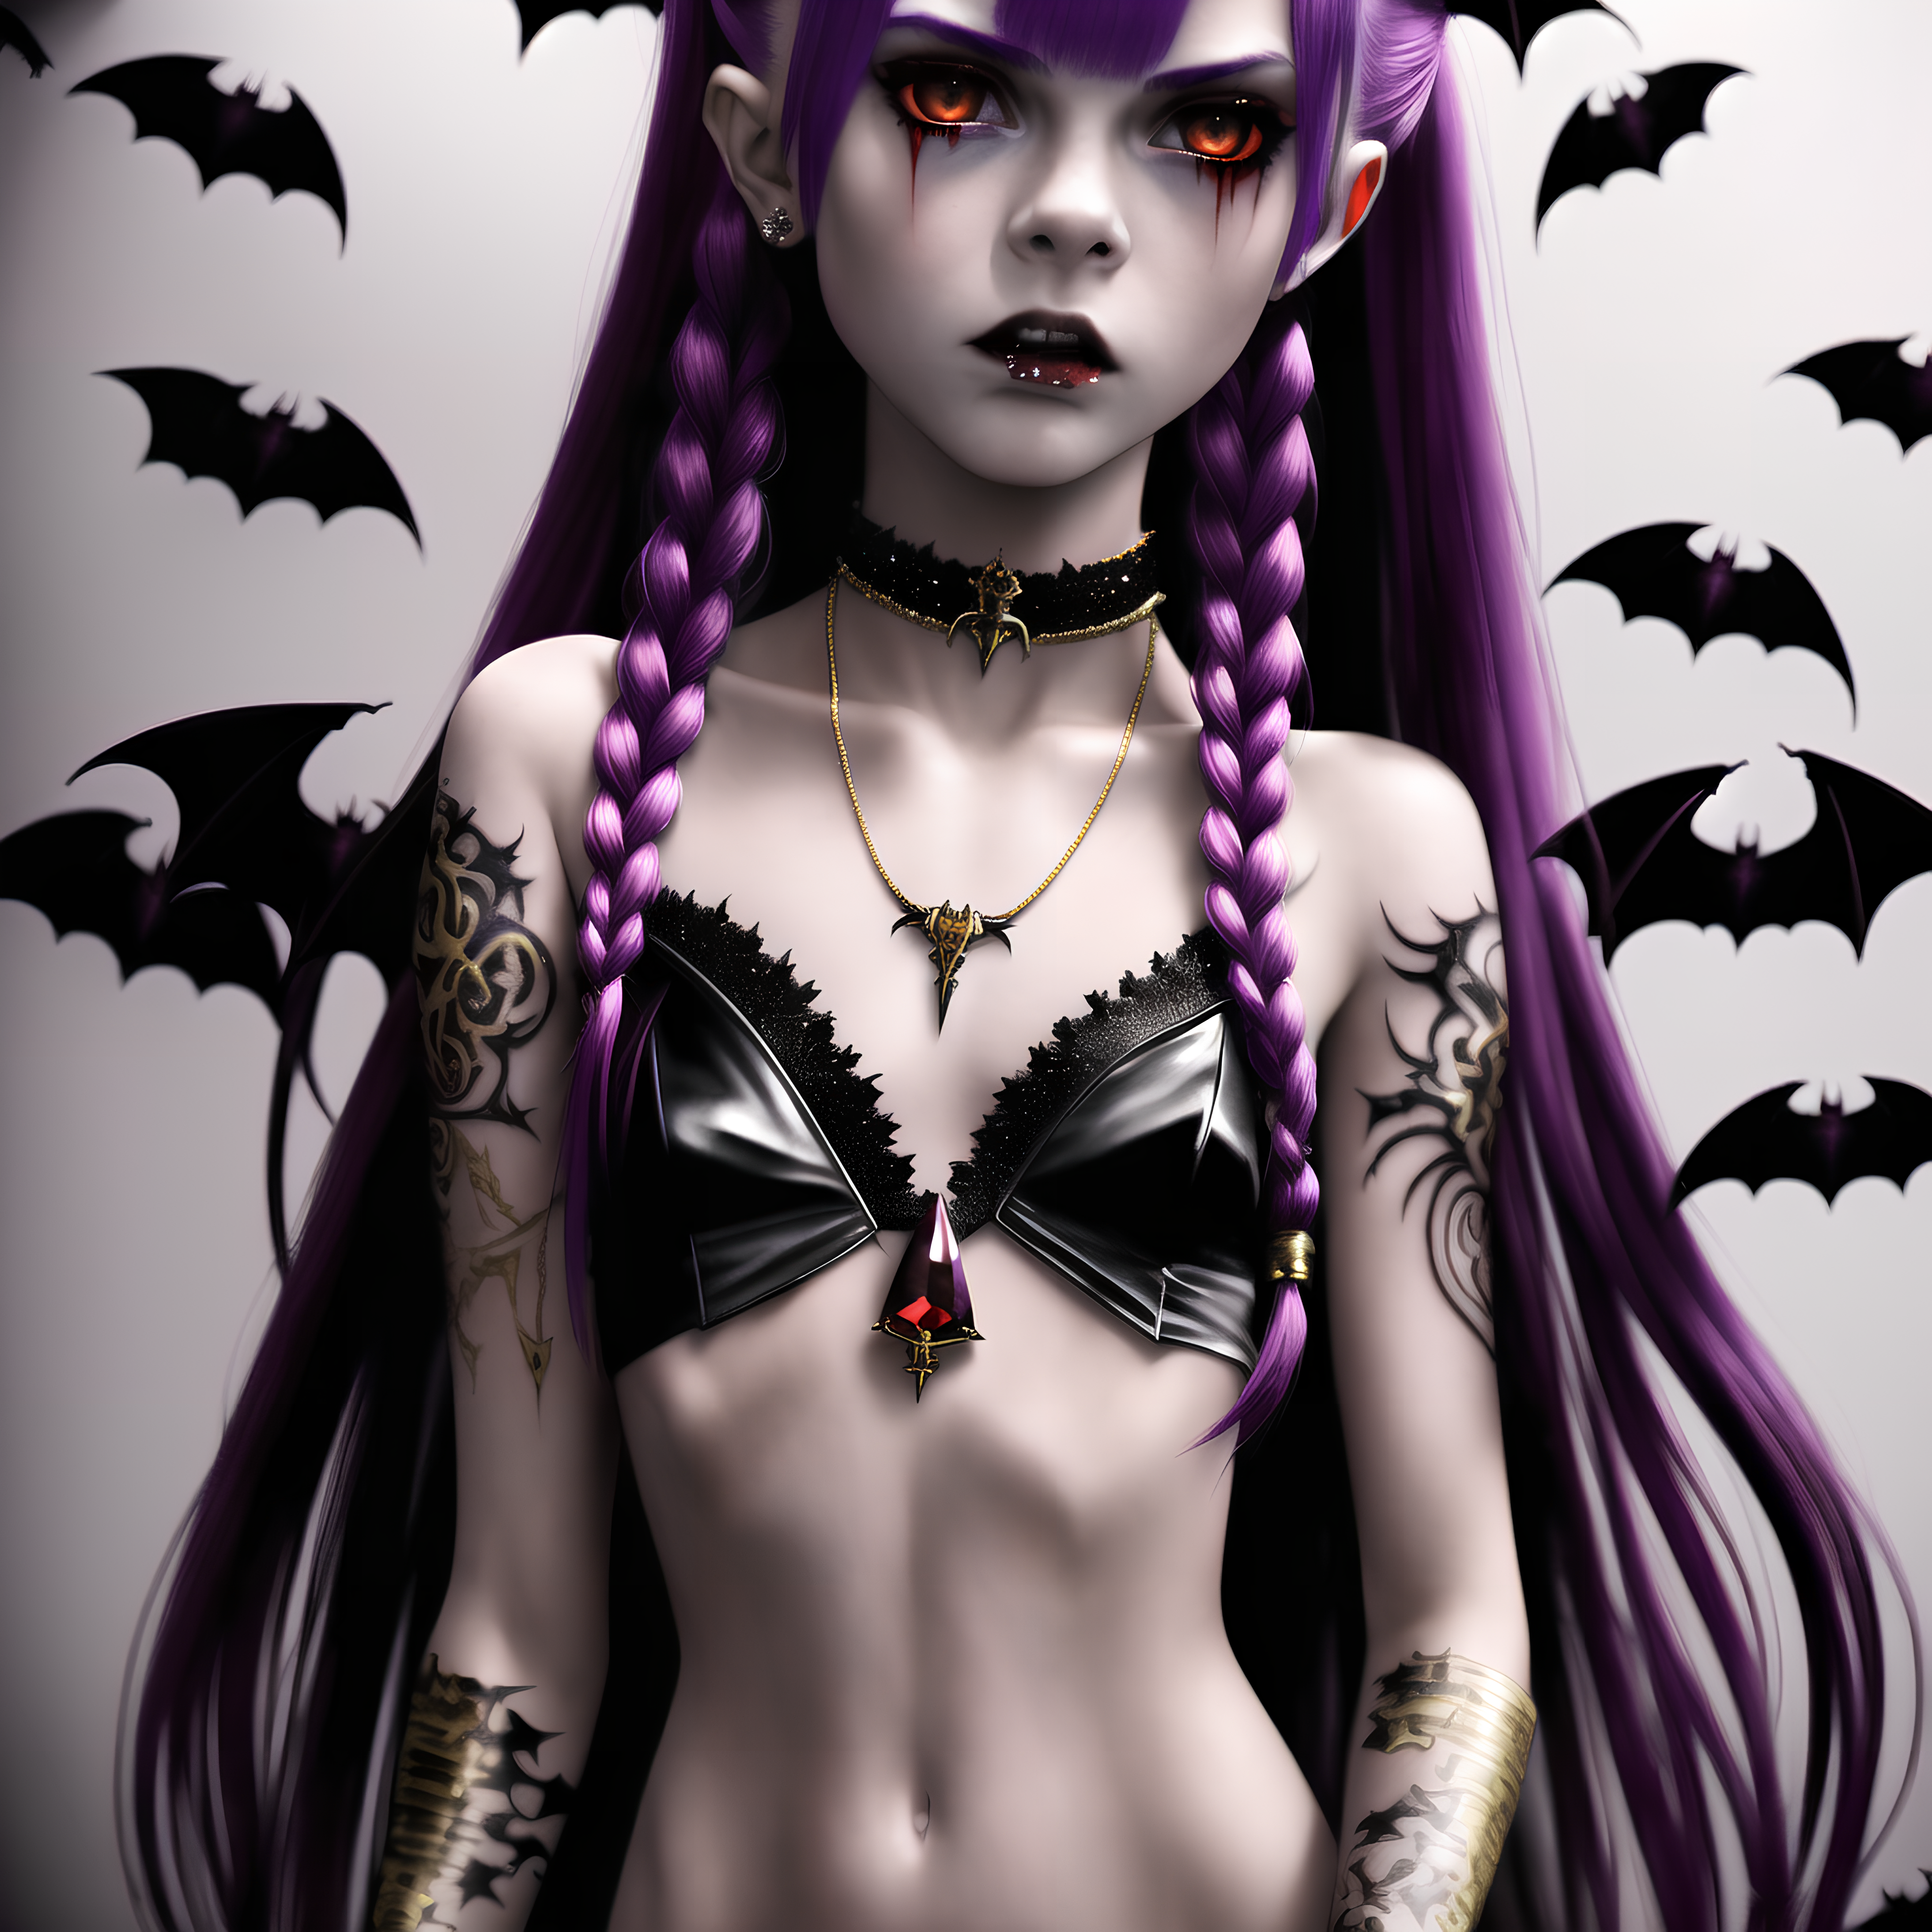 Vampire girl (18) by PunkerLazar on DeviantArt